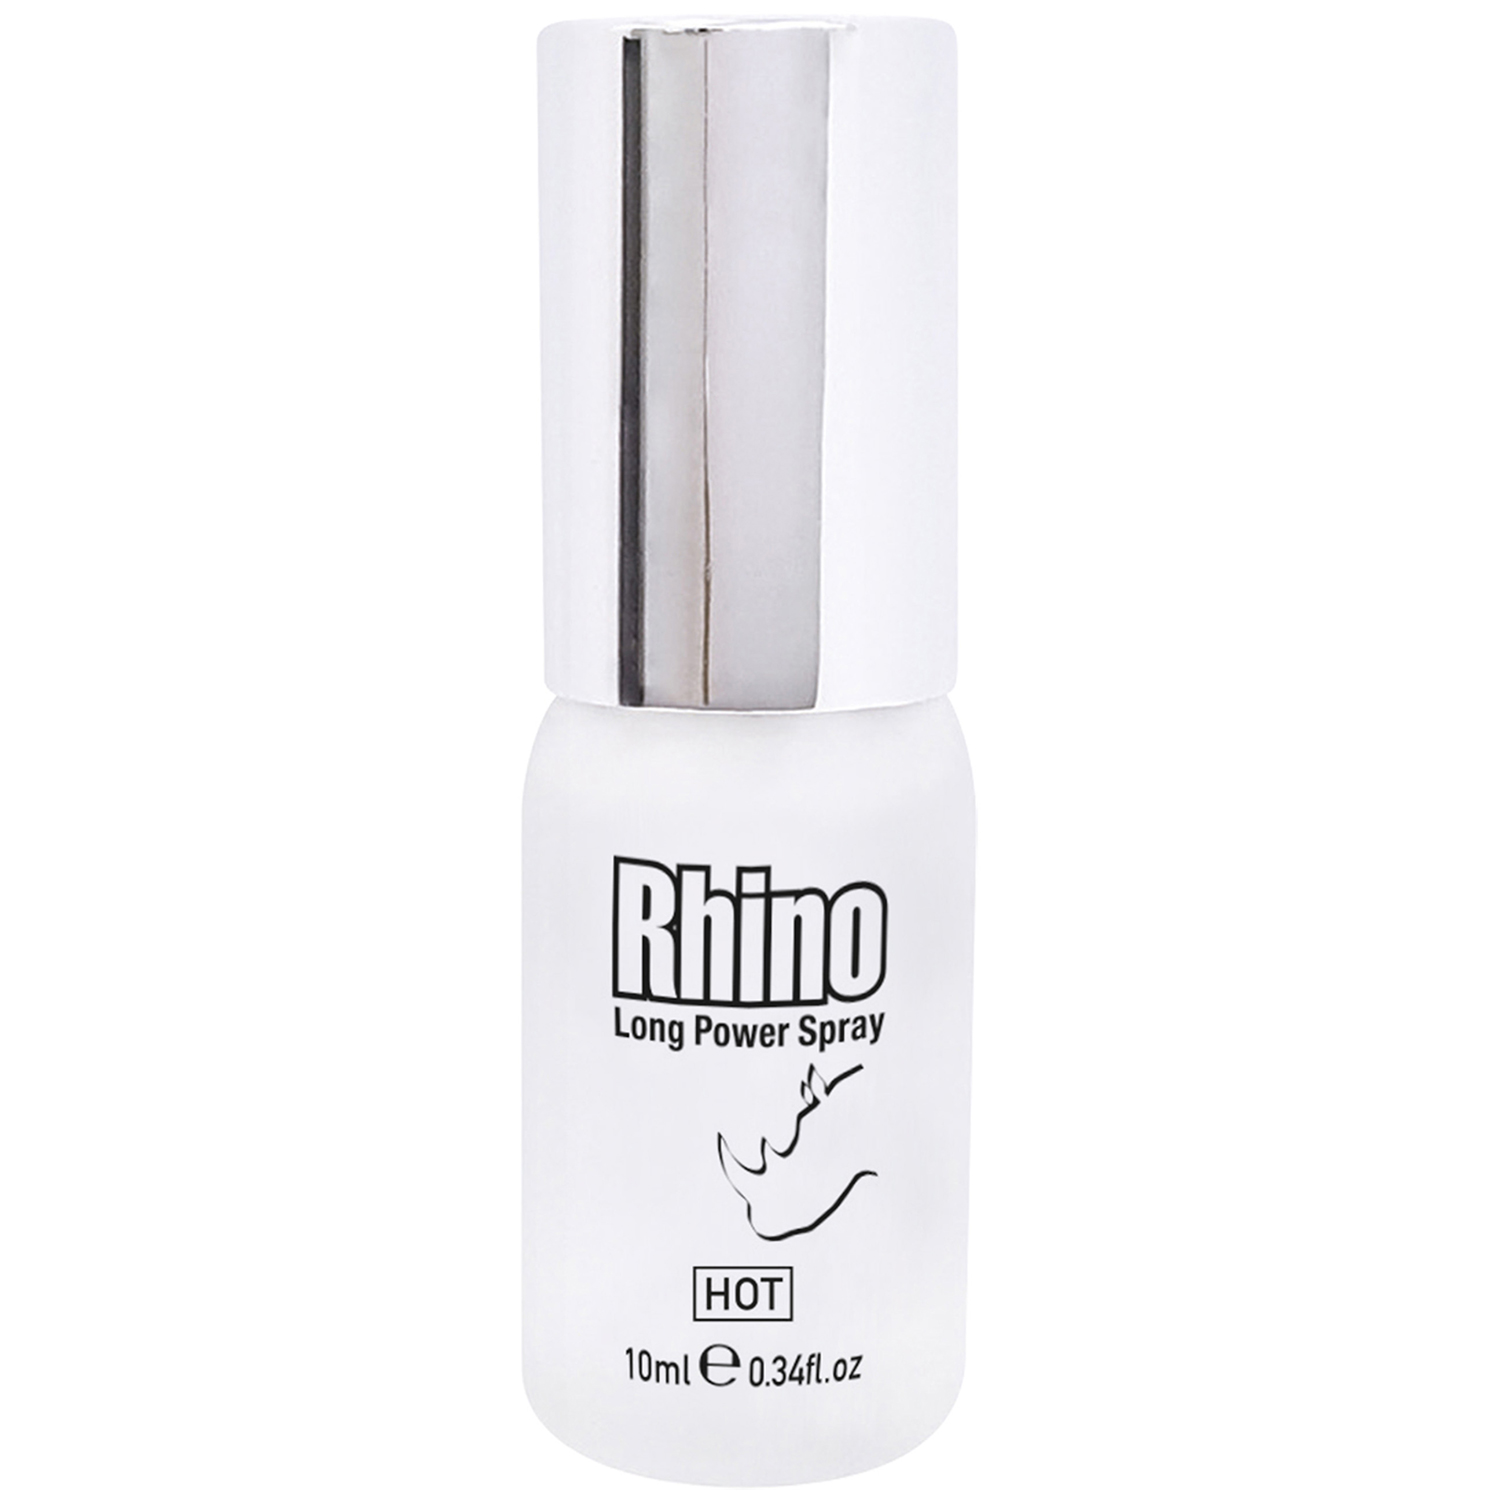 Rhino Spray Hot Long Power Spray 10 ml - Clear